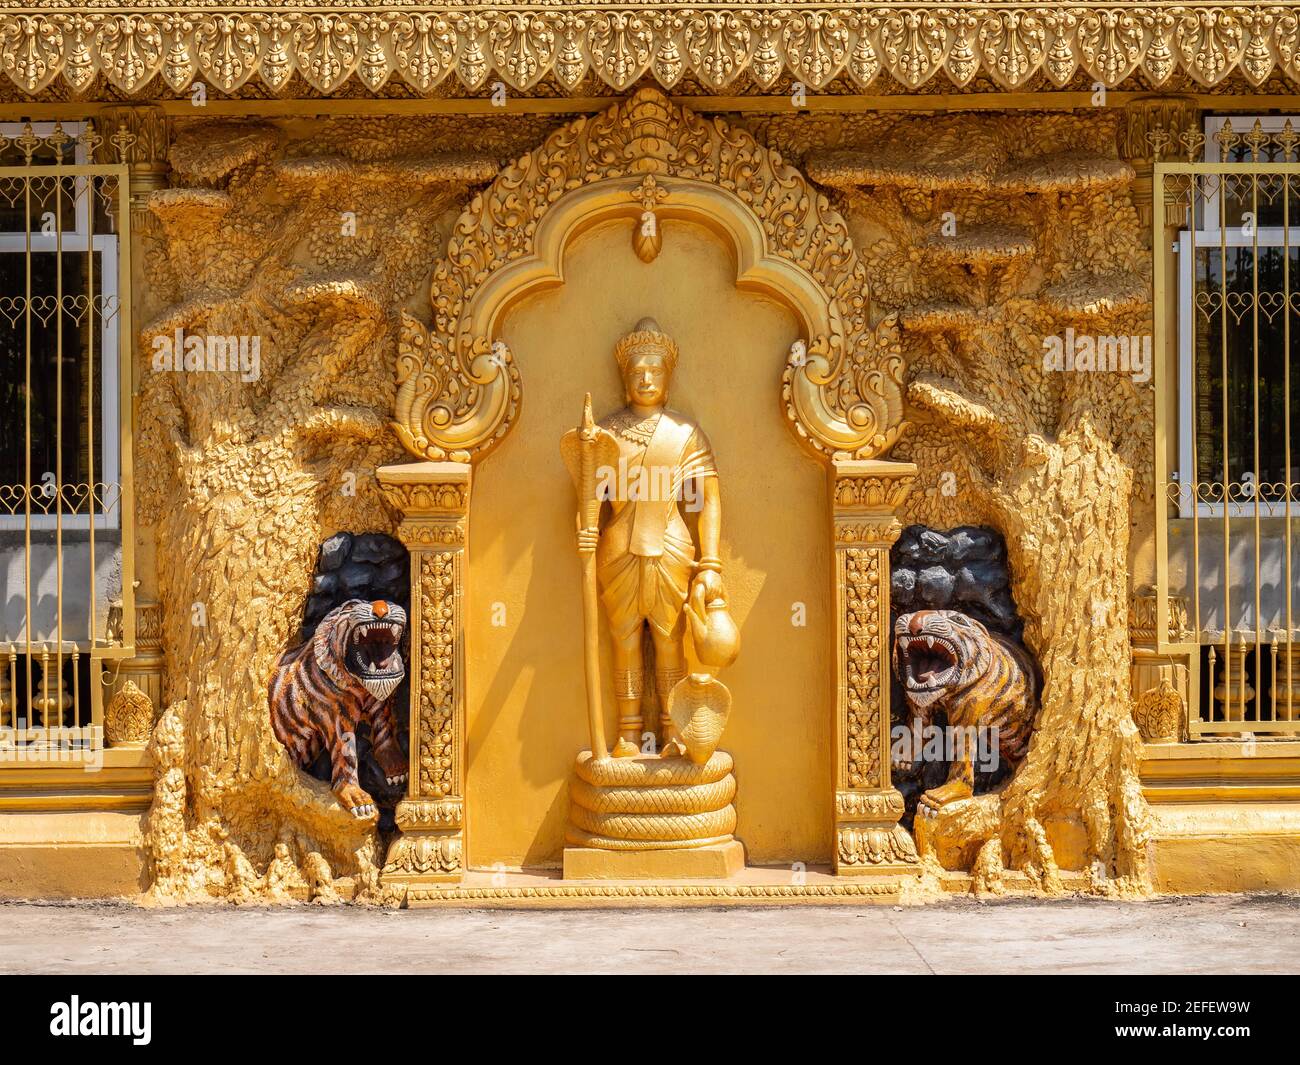 Façade de Mongkol Serei Kien Khleang, temple bouddhiste de Phnom Penh, Cambodge, situé entre le Tonle SAP et le Mékong. Banque D'Images